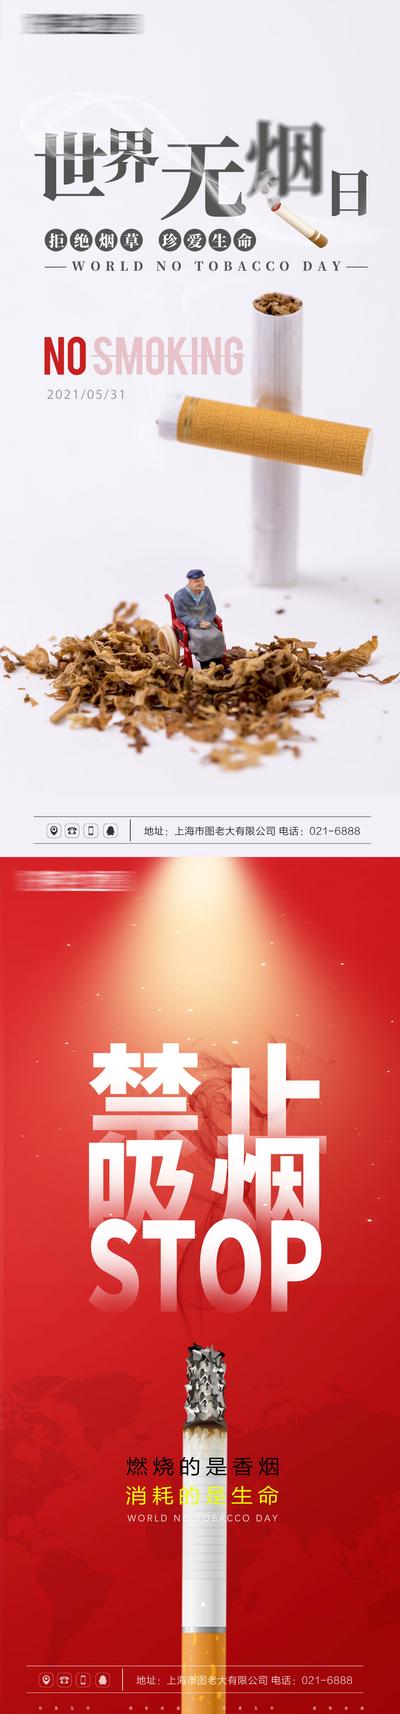 南门网 海报 地产 公历节日 世界无烟日 健康 禁止吸烟 二手烟